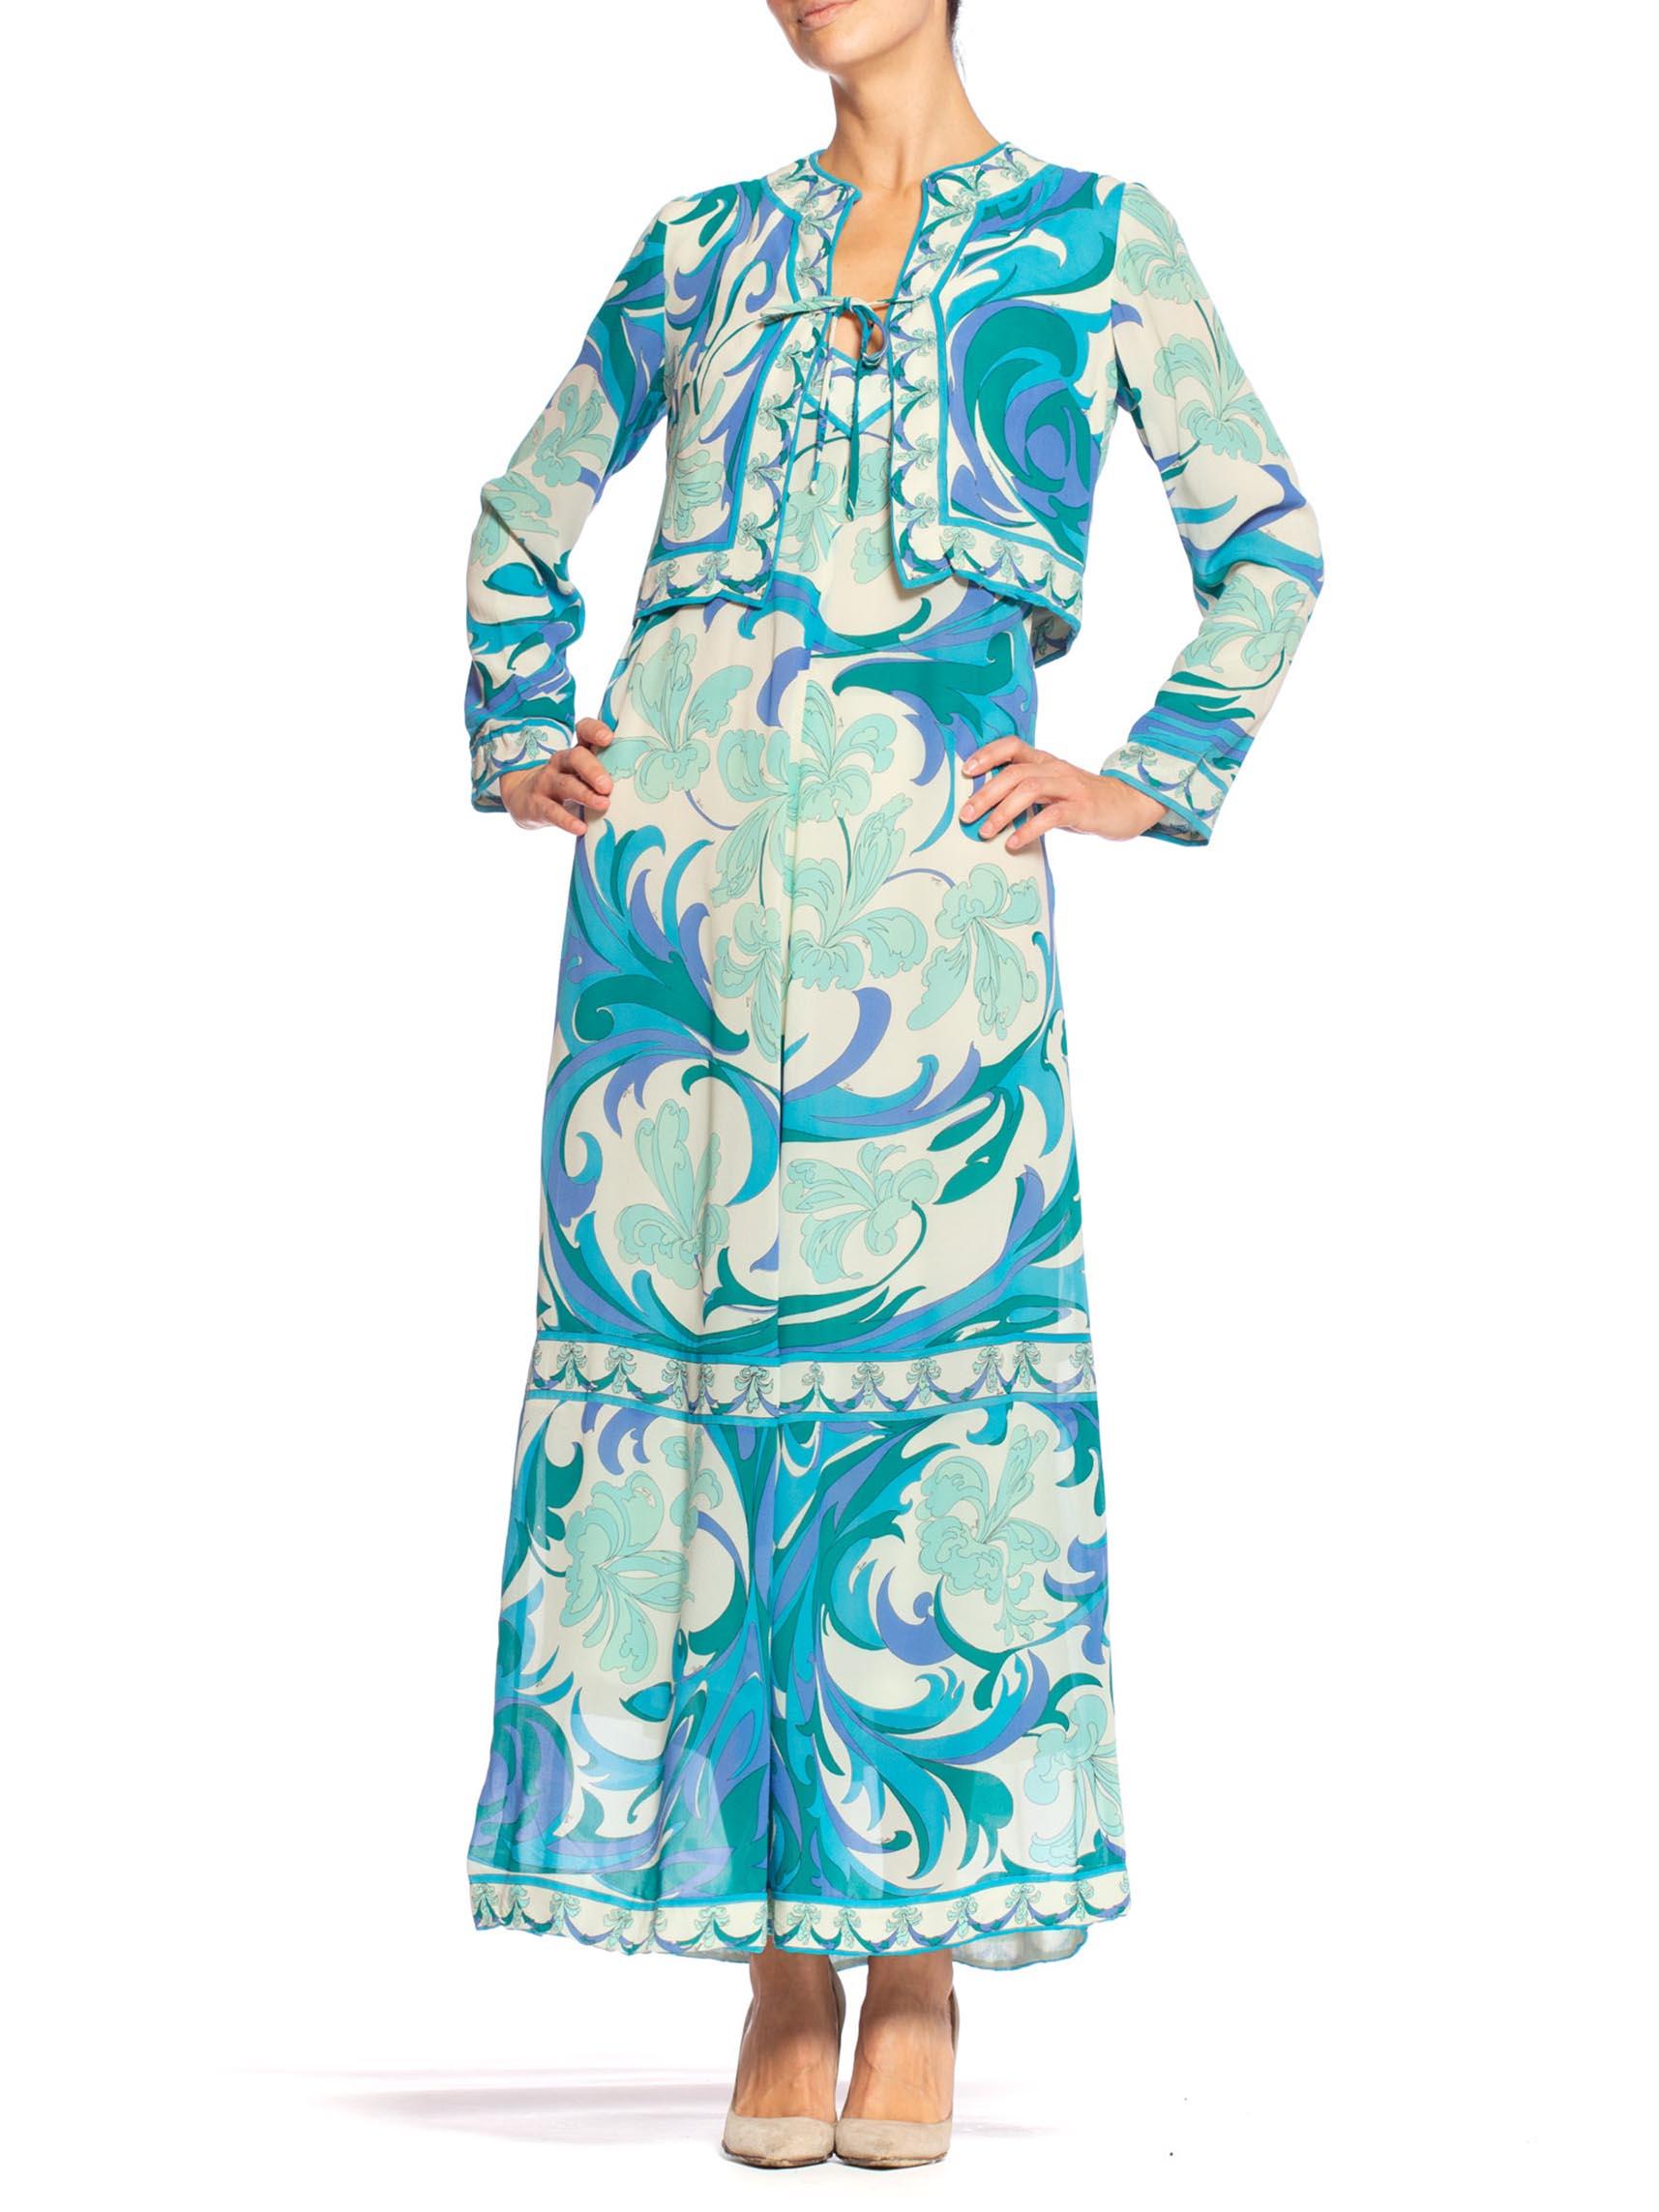 aqua blue silk dress